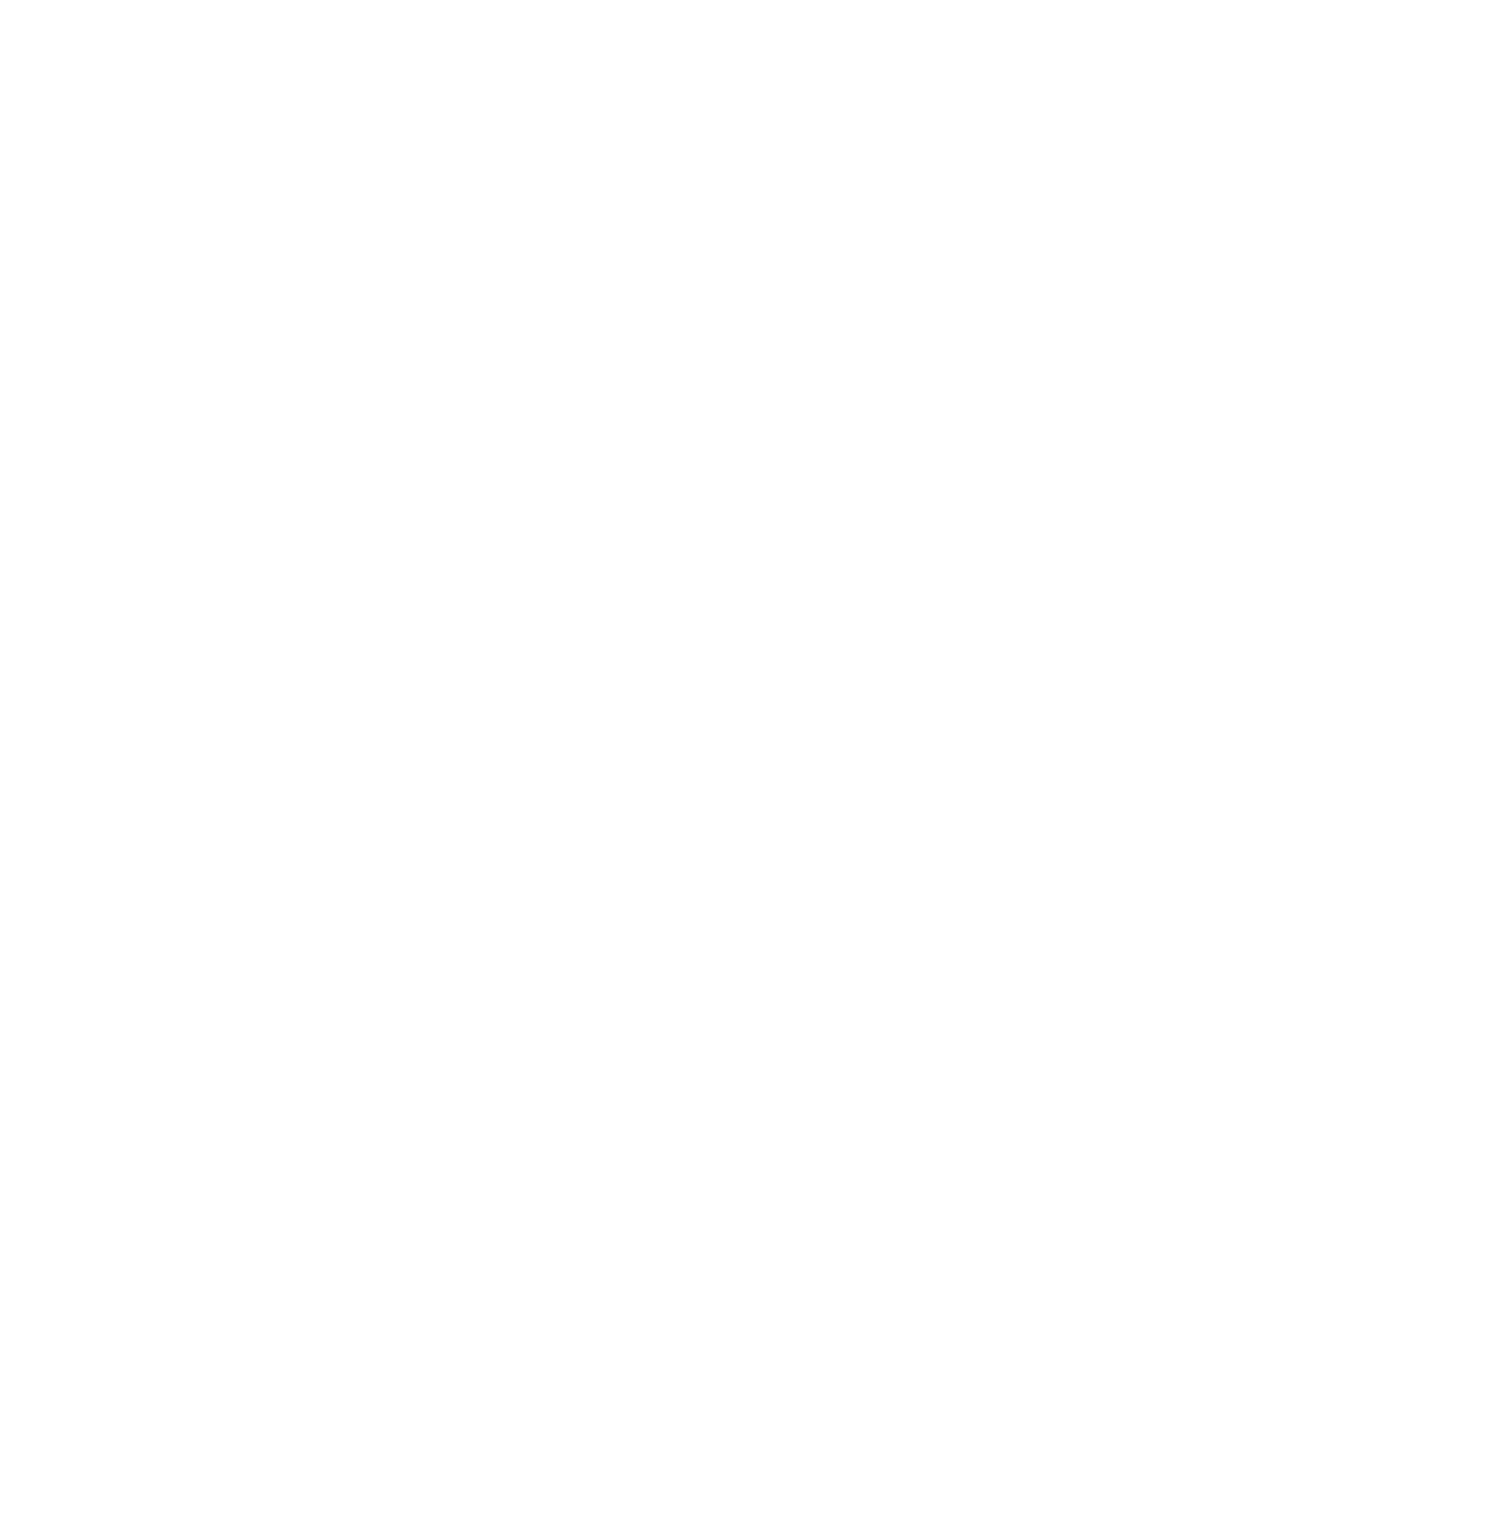 Chunghwa Telecom logo for dark backgrounds (transparent PNG)